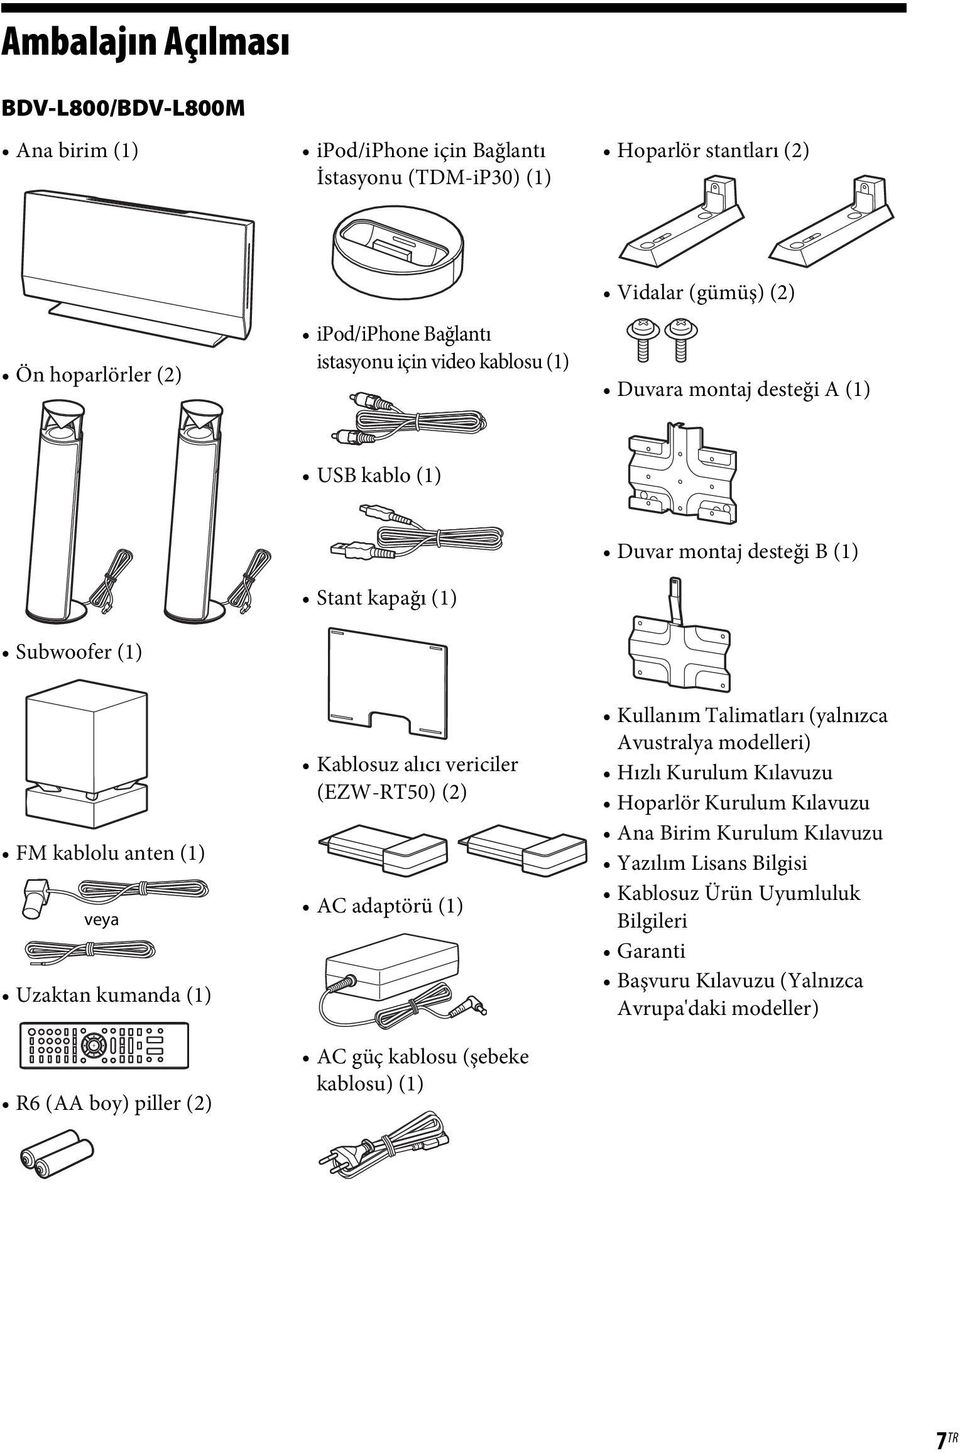 (1) R6 (AA boy) piller (2) Kablosuz alıcı vericiler (EZW-RT50) (2) AC adaptörü (1) AC güç kablosu (şebeke kablosu) (1) Kullanım Talimatları (yalnızca Avustralya modelleri) Hızlı